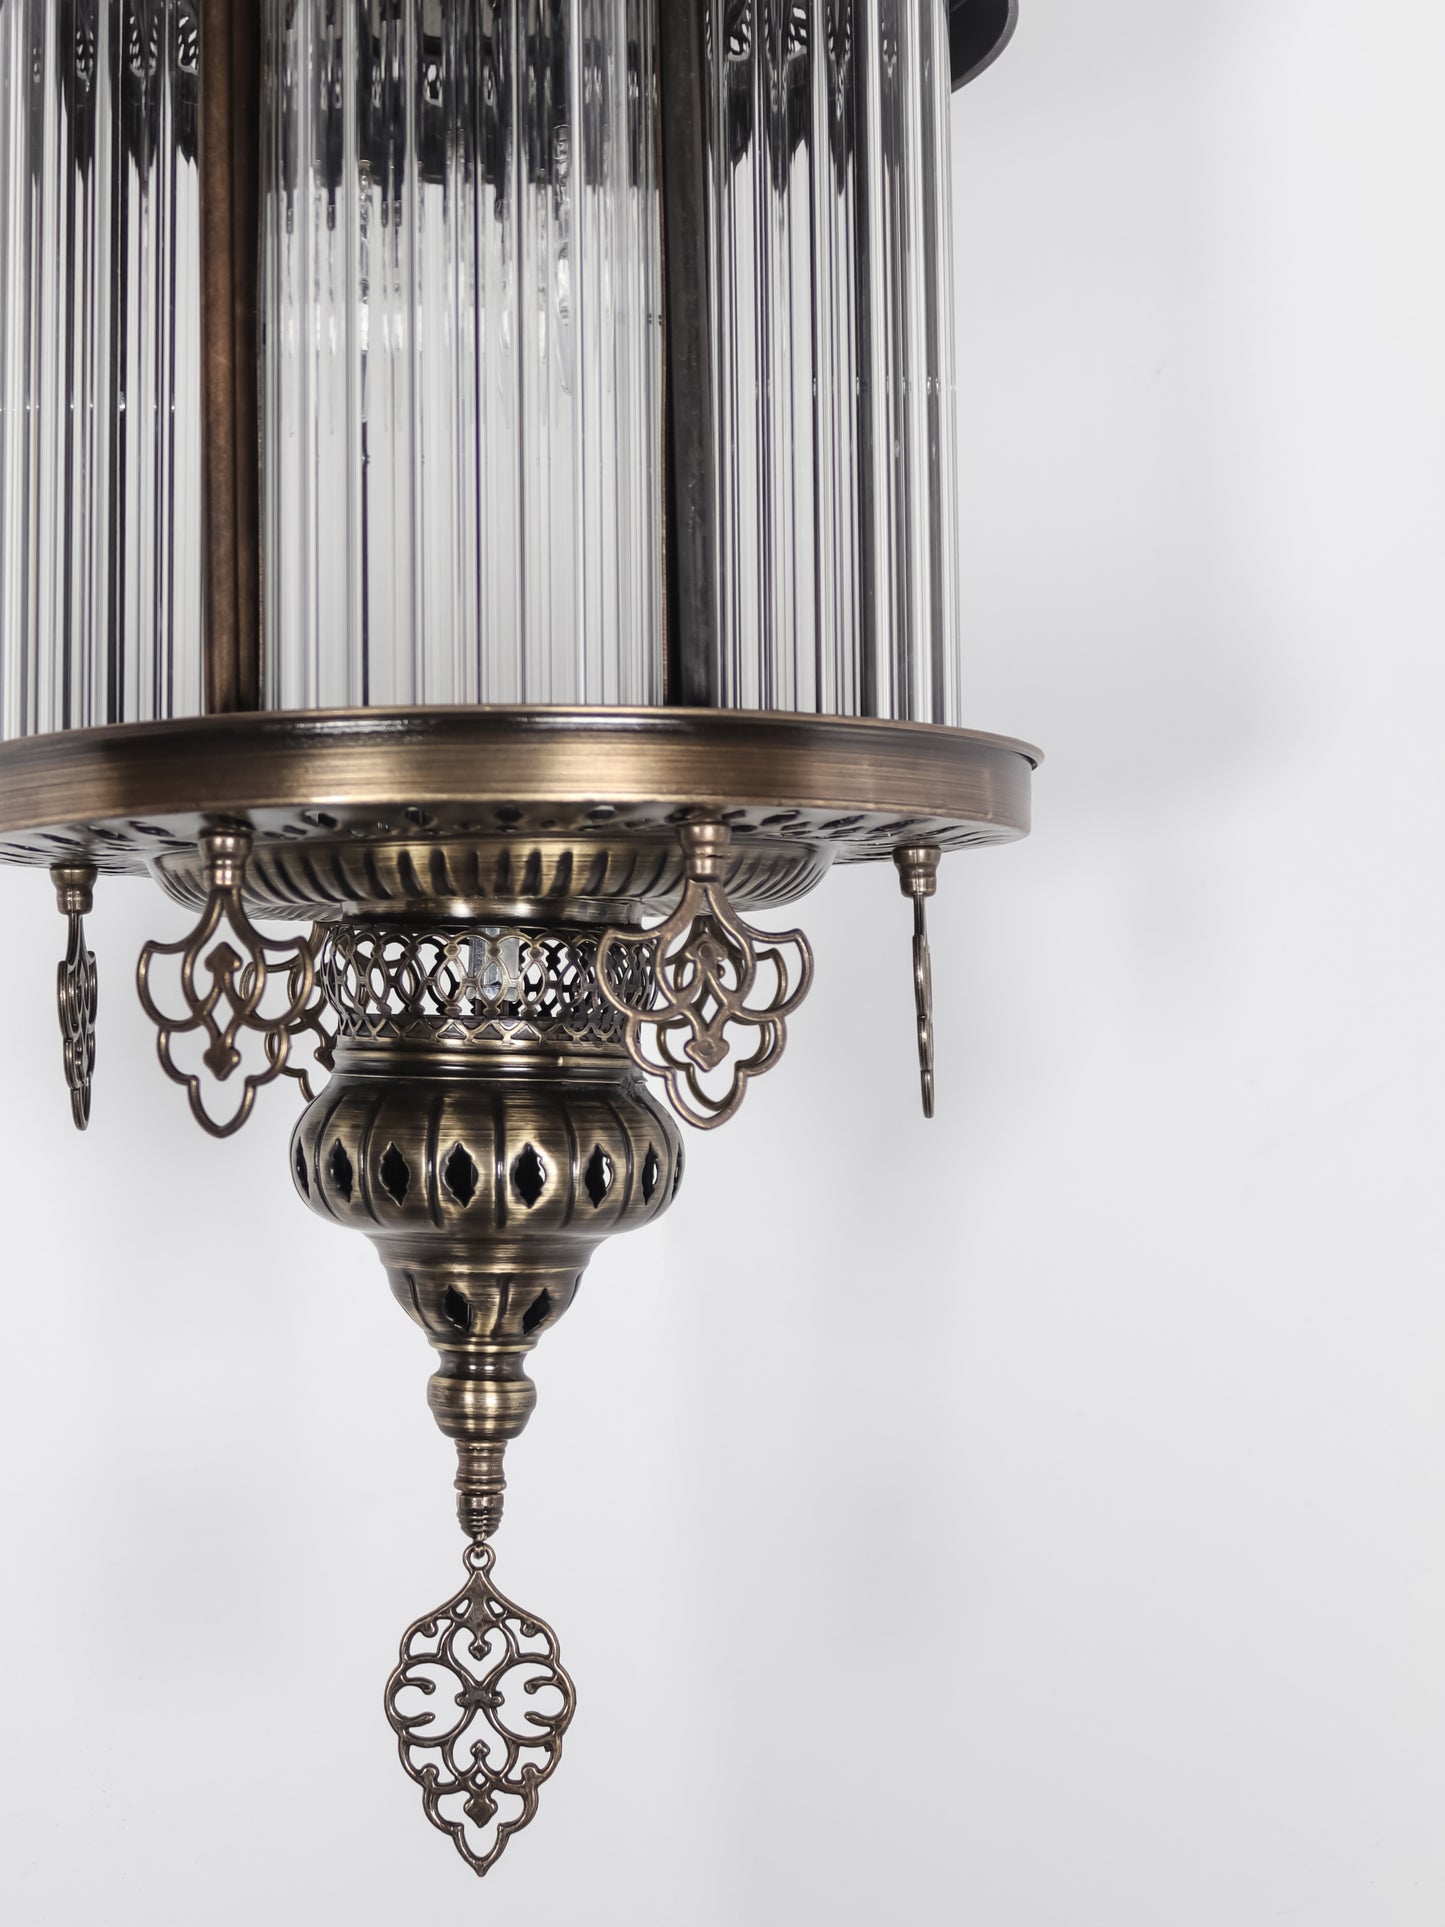 Turkish Pyrex Blown Glass Lantern Fixture Modern Ceiling Light